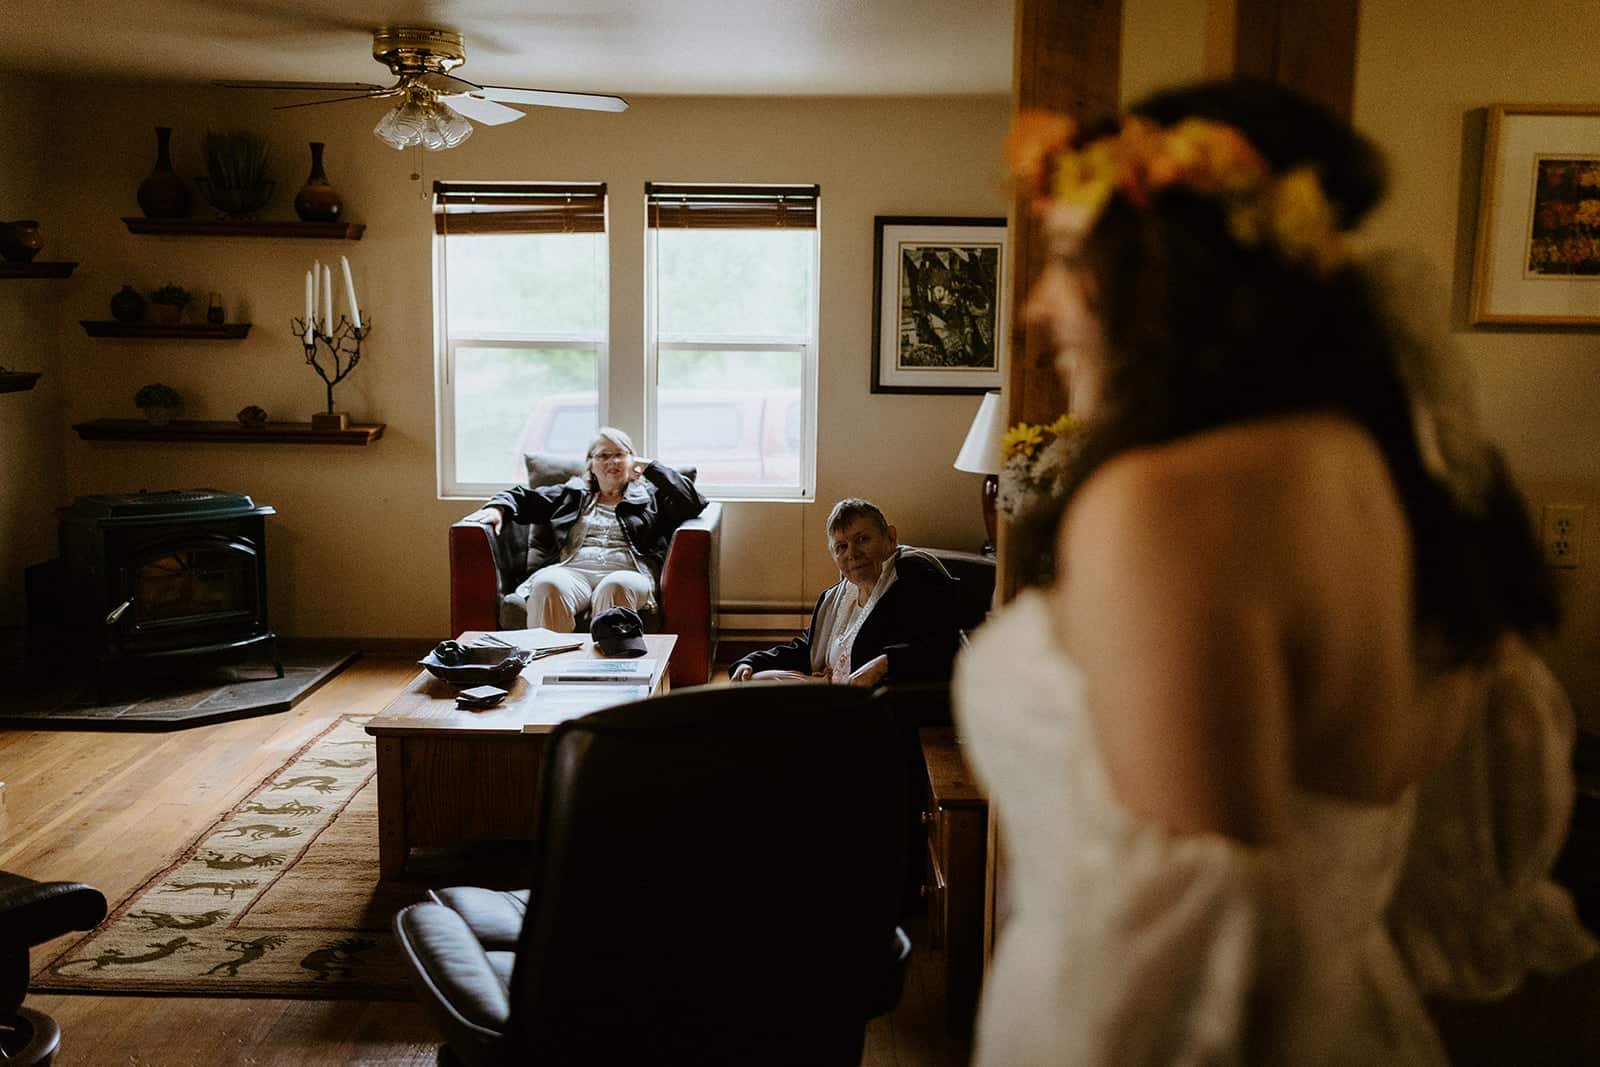 Two elderly women sitting in a living room look on as a woman walks in in her wedding dress